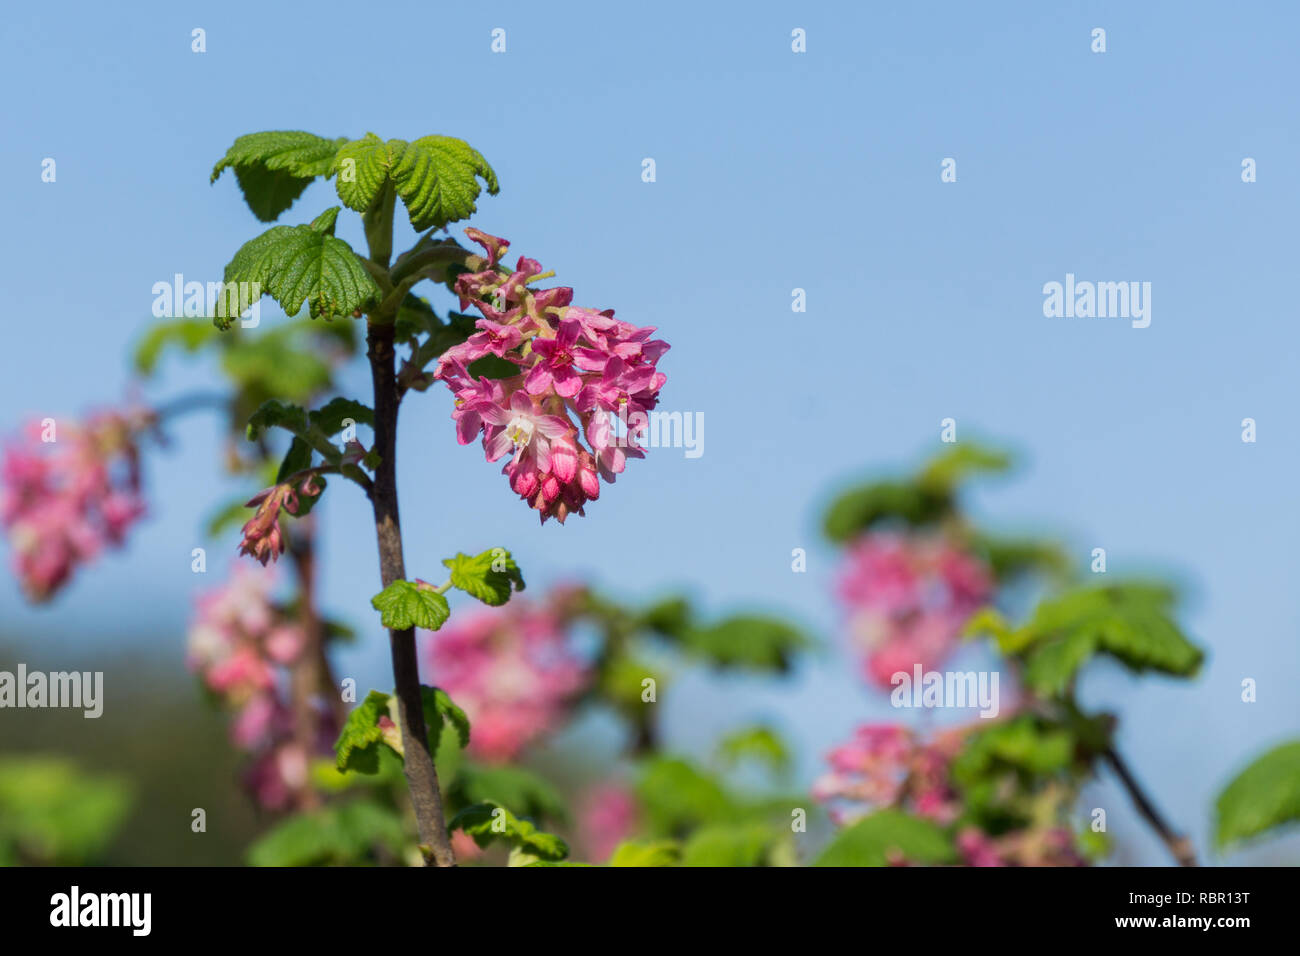 Pink flowering currant (Ribes sanguineum glutinosum), California Stock Photo